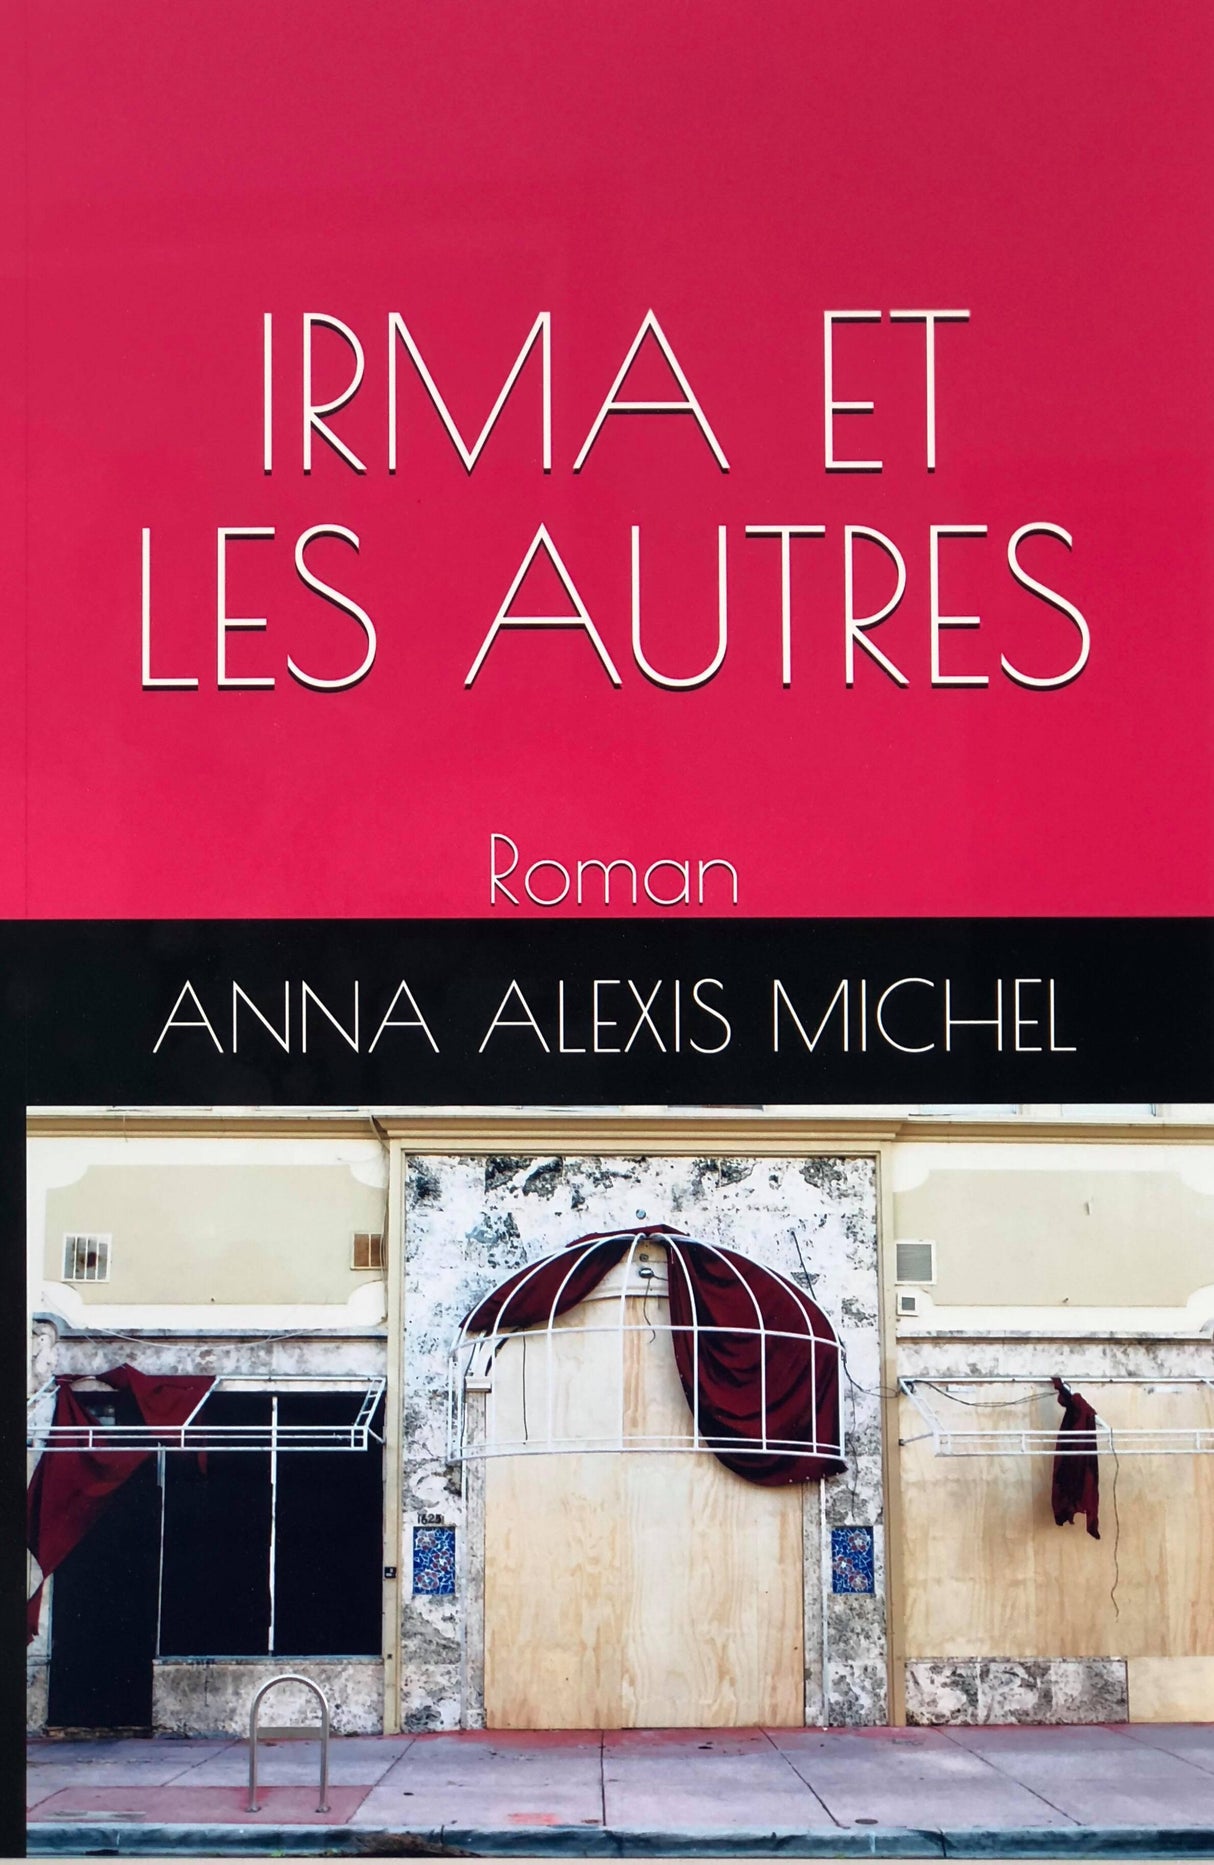 IRMA ET LES AUTRES - Anna Alexis Michel